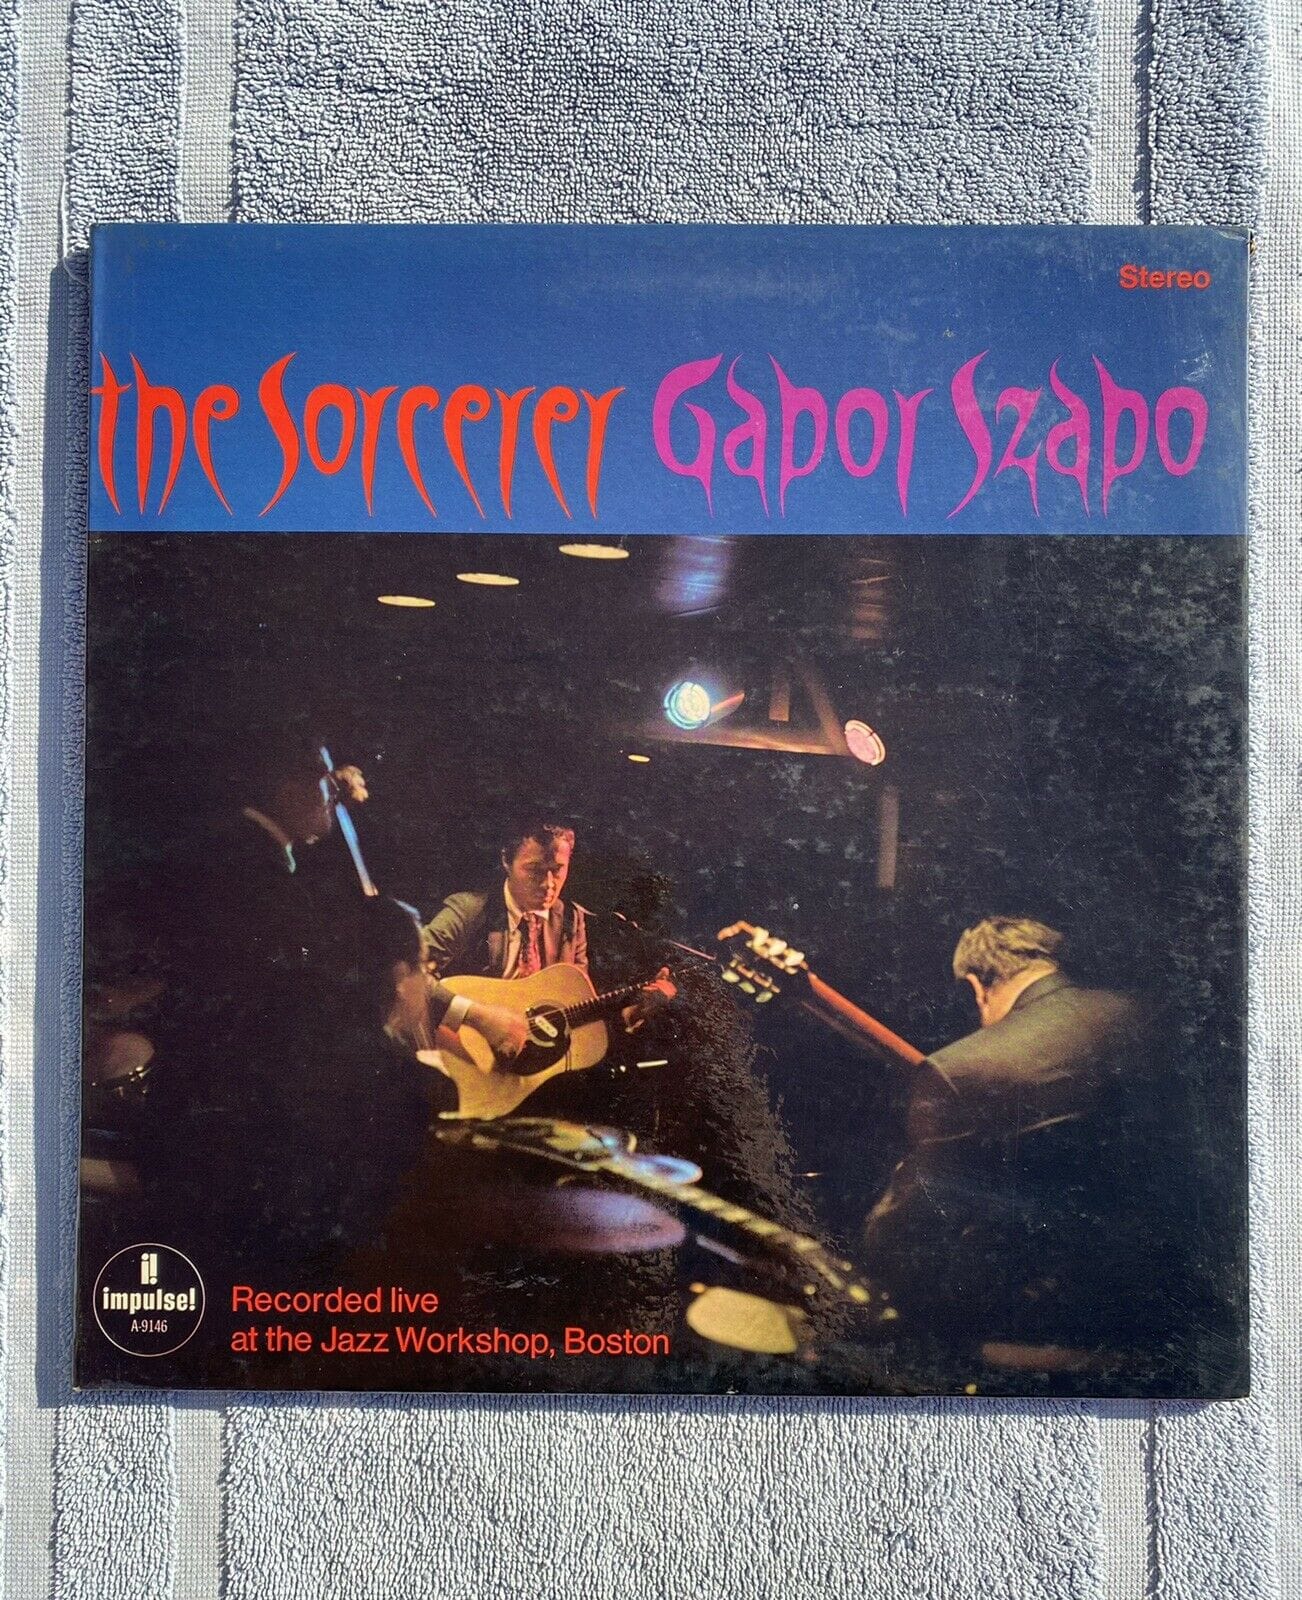 Gabor Szabo OG 1967 Stereo The Sorcerer RARE JAZZ IMPULSE LP Vinyl Record 1